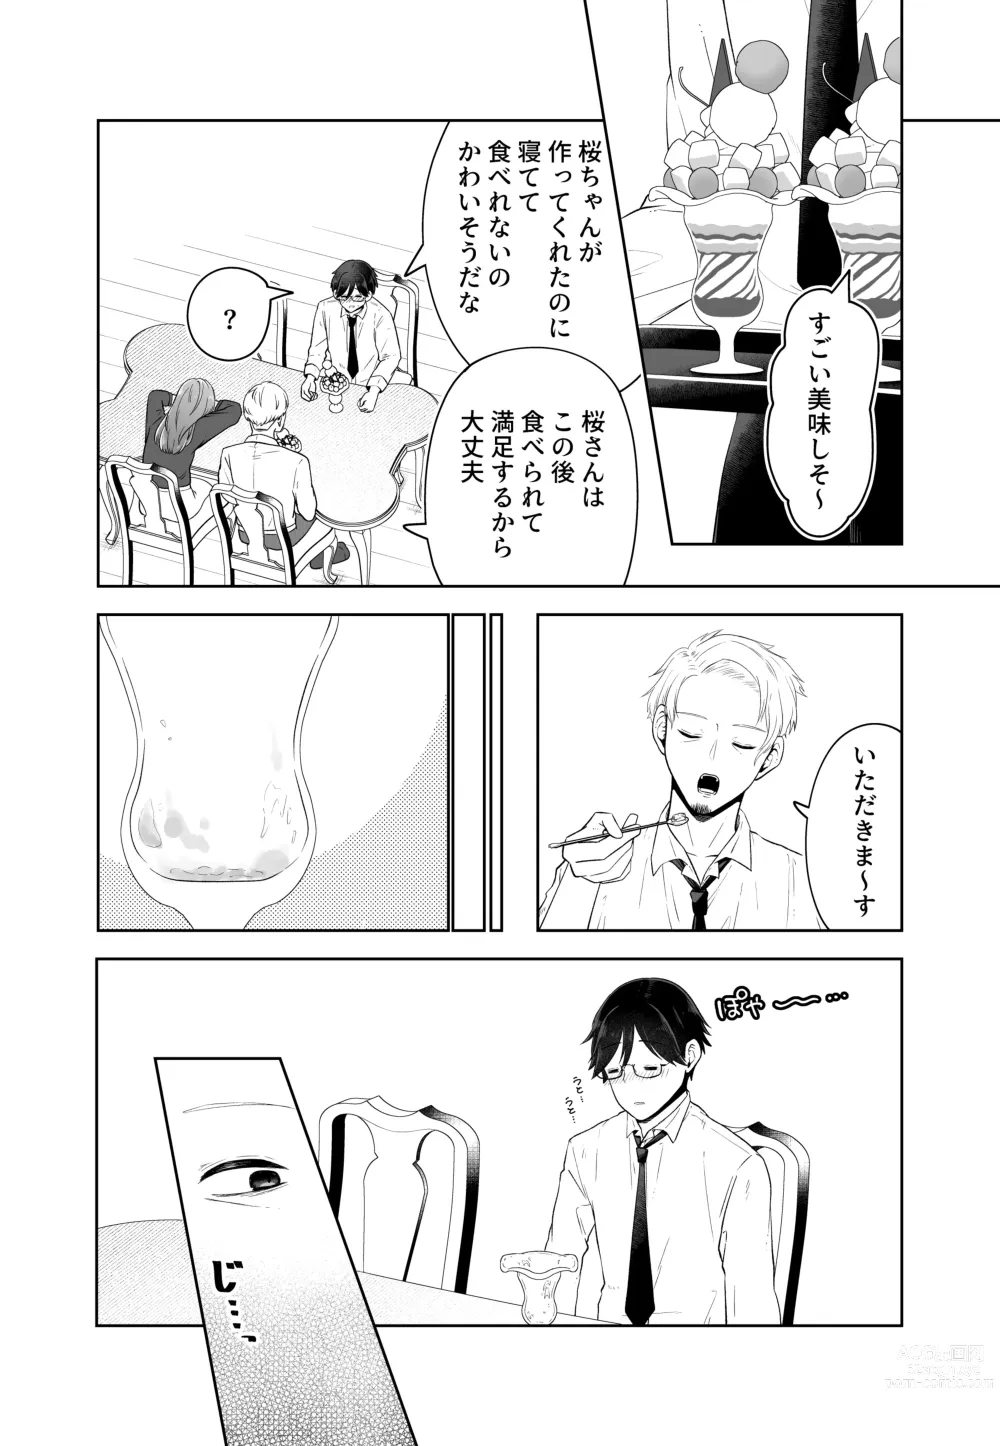 Page 18 of doujinshi Danna no Joushi ni Odosareru.